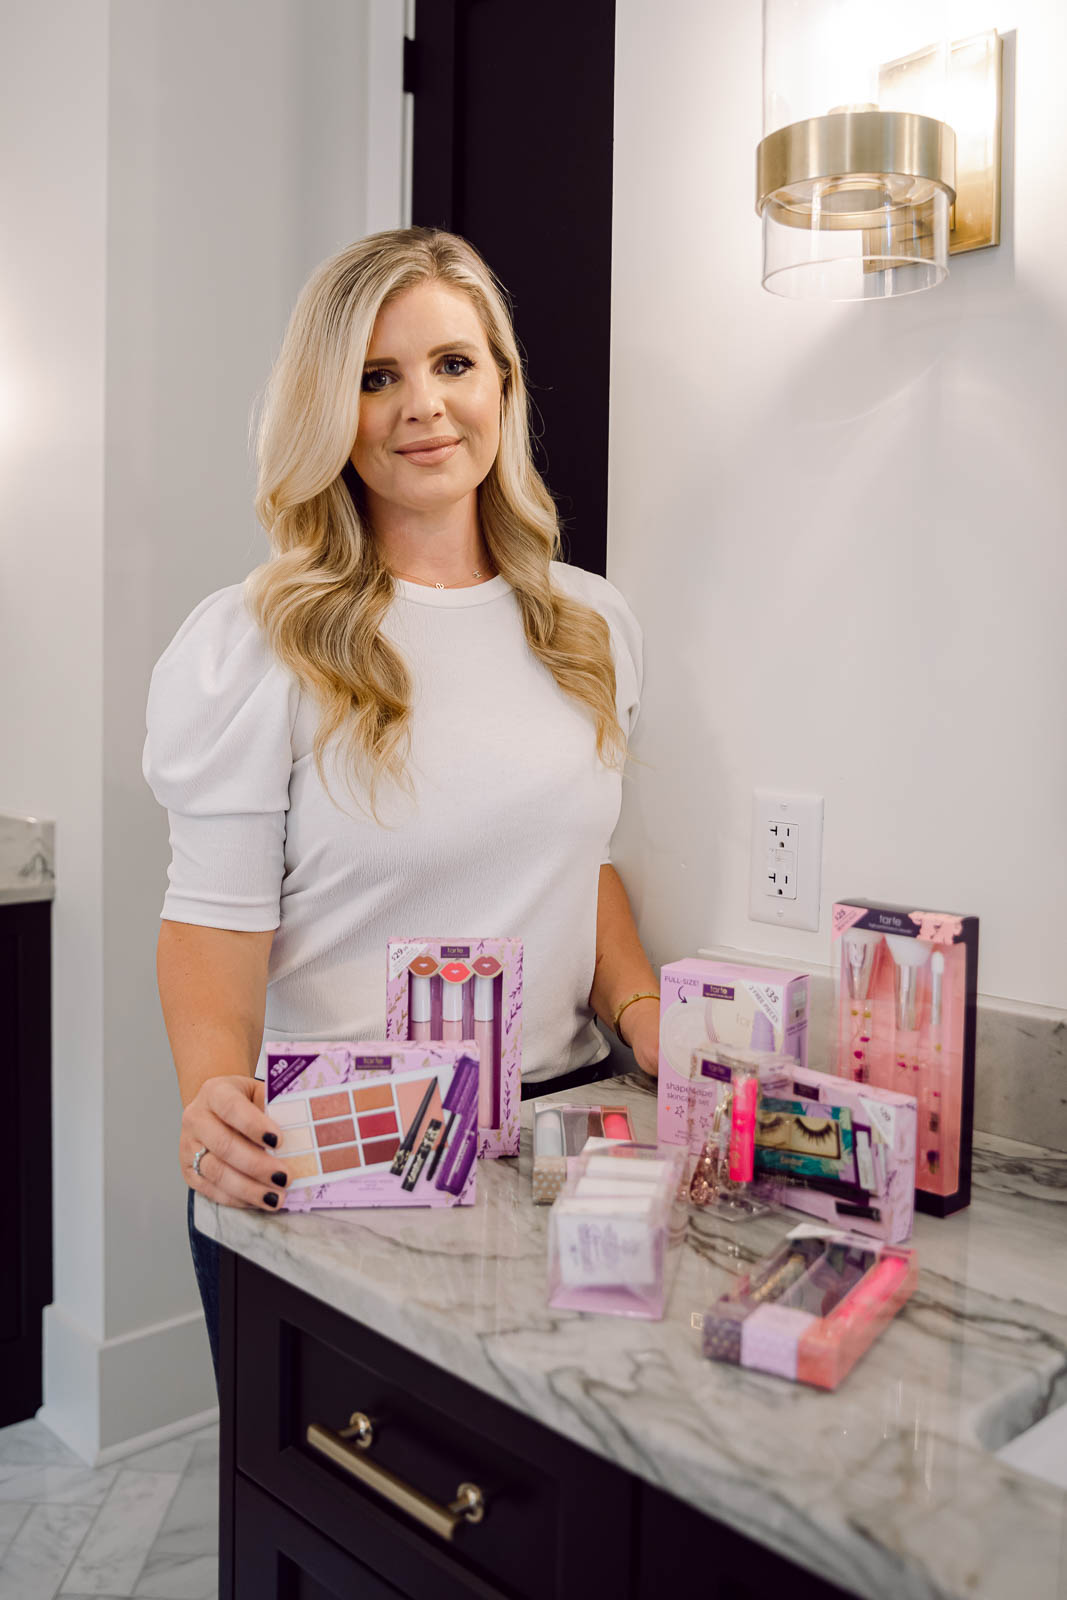 Beauty Influencer Cristin Cooper shares her favorite tarte makeup sets